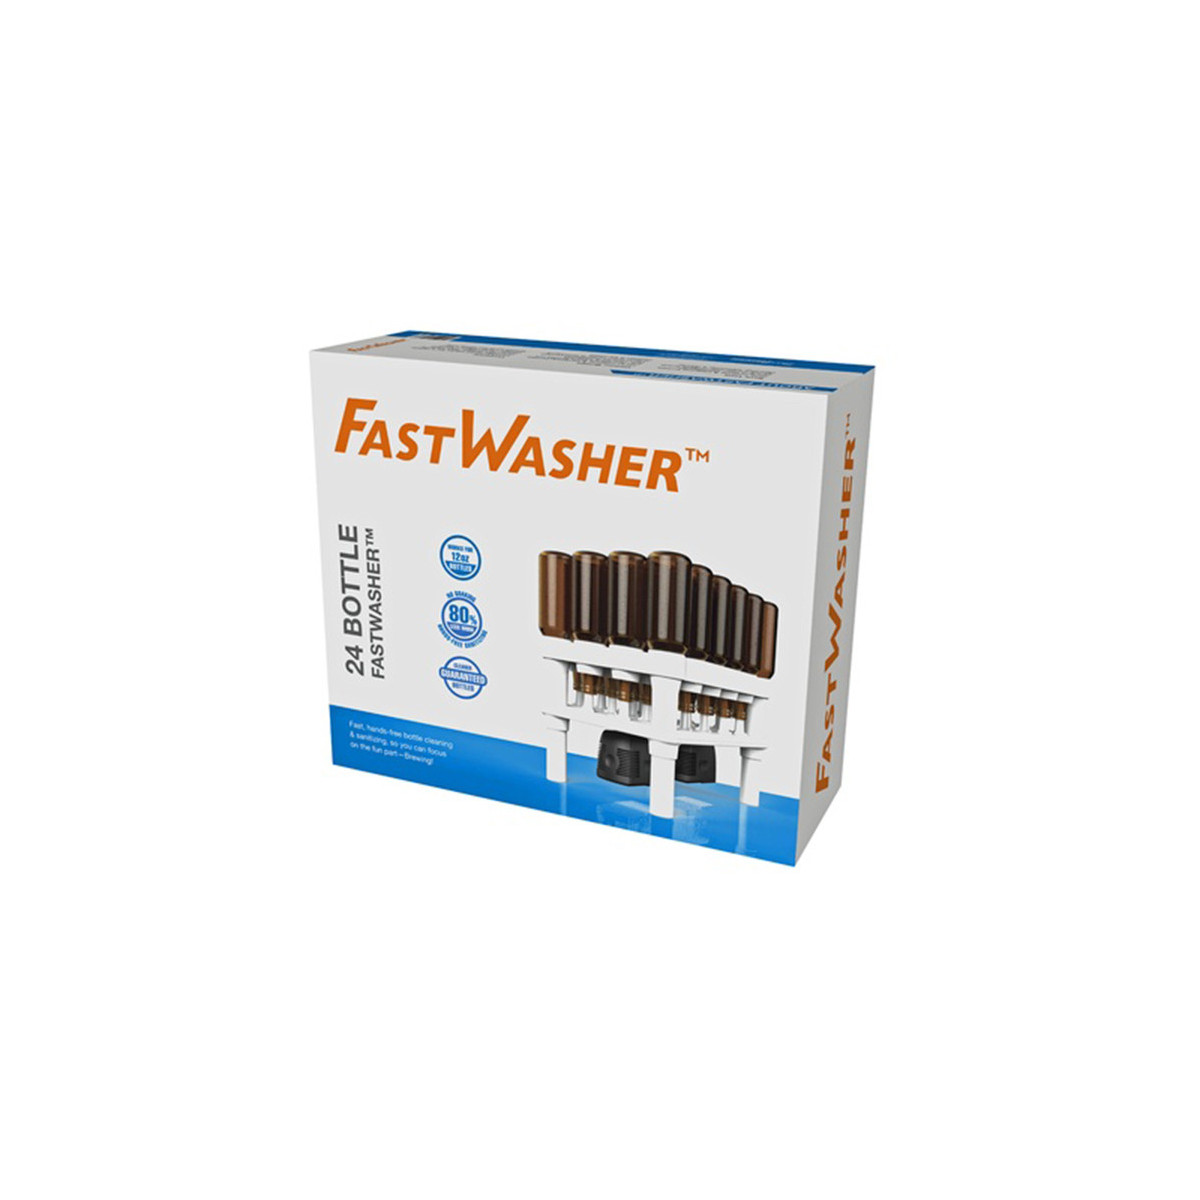 FastWasher 24 Waschsystem für 24 Flaschen